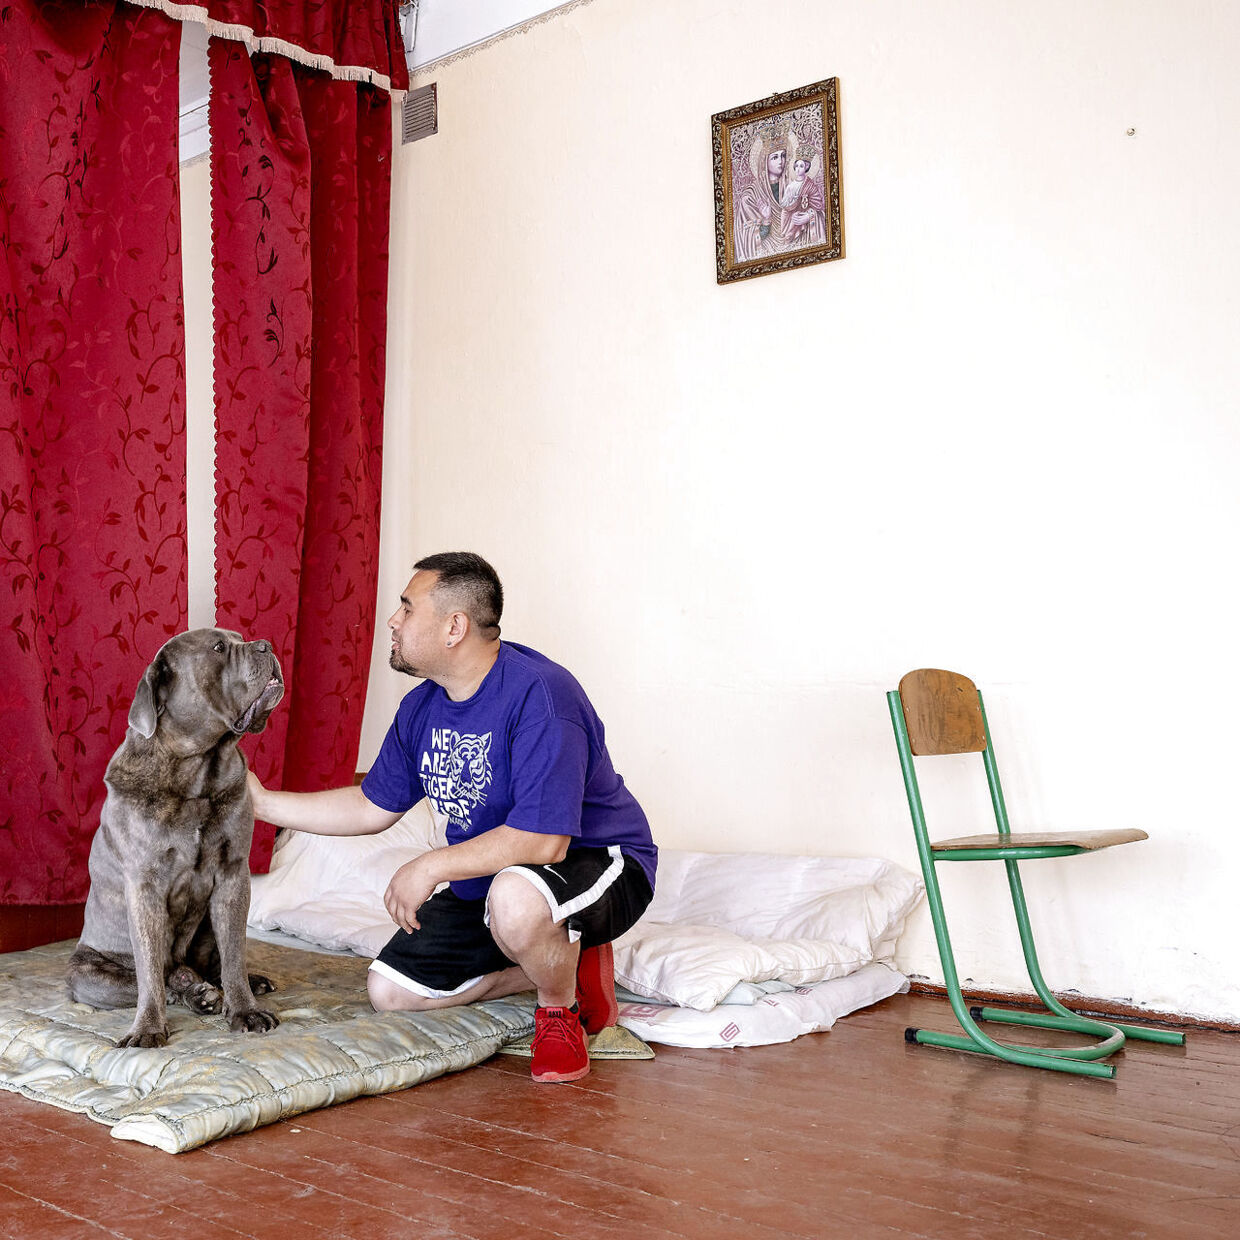 Evgeny flygtede med sin kone, 14-årige søn, hund og kat fra Kharkiv, da russerne besatte området. Konen, sønnen og katten blev kørt til grænsen og sendt ud af landet, mens Evgeny og hunden Leo selv flygtede til den gamle skole i landsbyen Myl'ne, hvor de i dag bor sammen med andre flygtninge fra det østlige Ukraine.